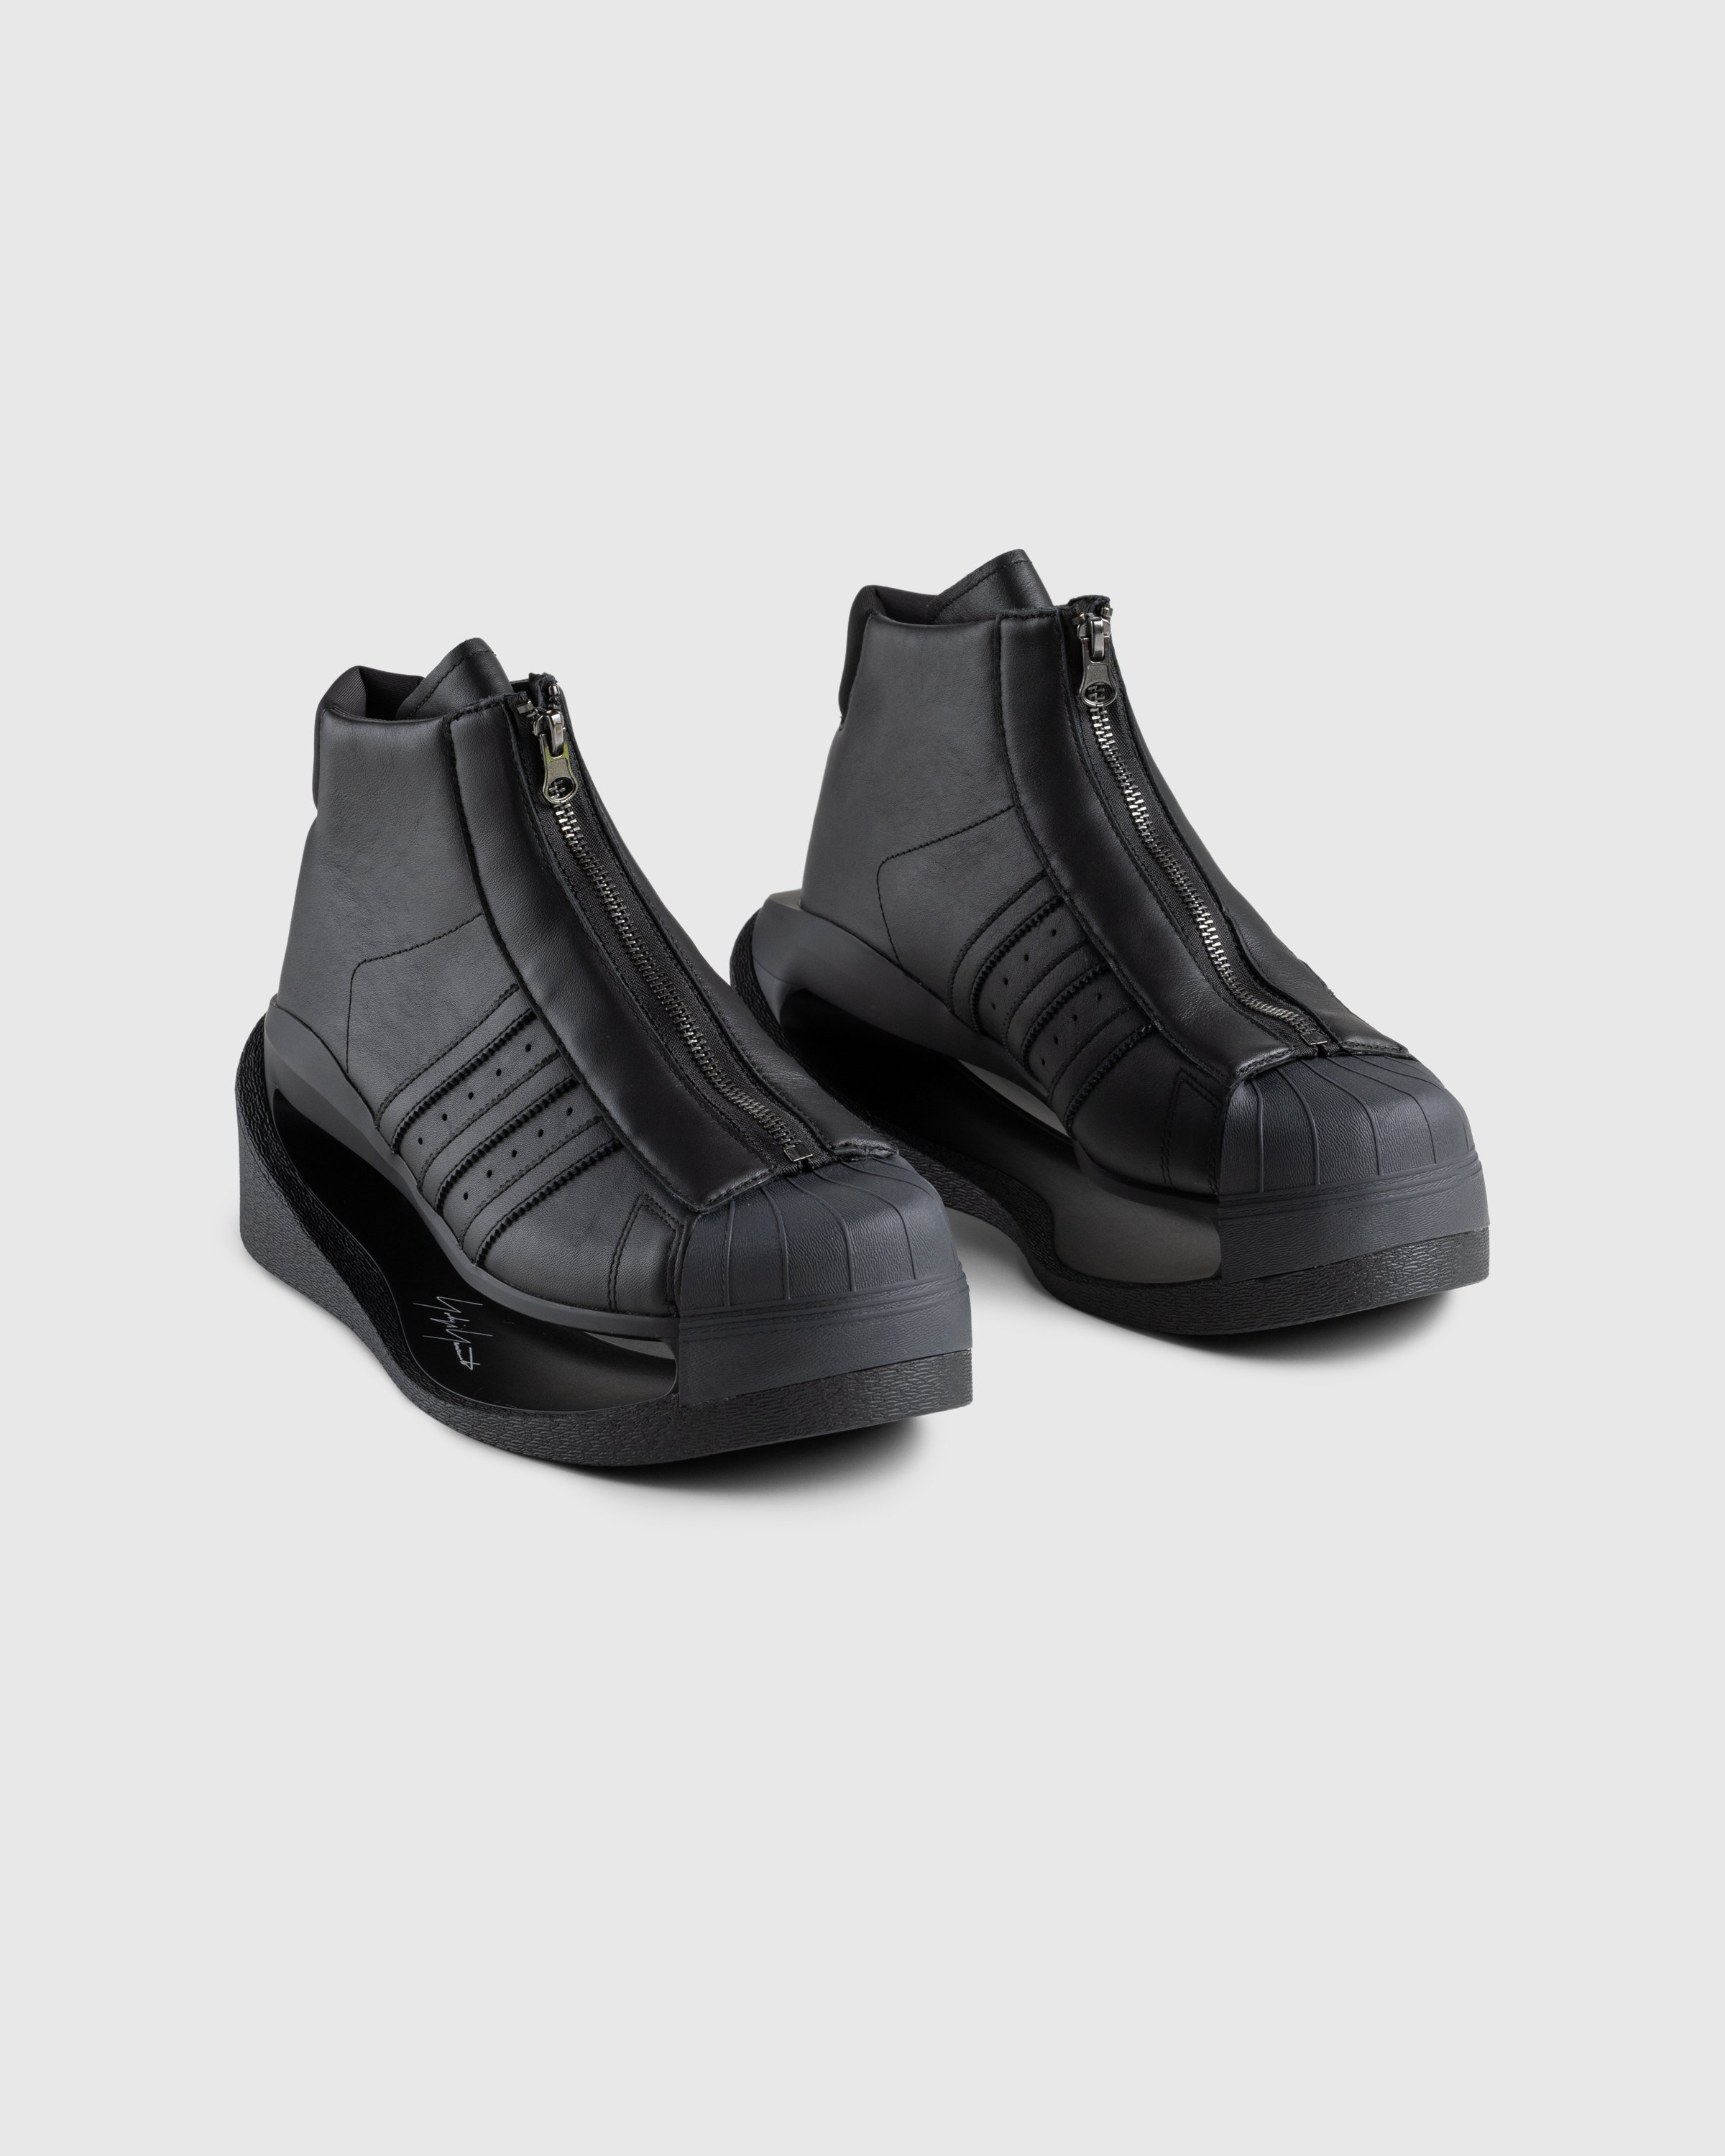 Y-3 - Gendo Pro Model Black - Footwear - Black - Image 3